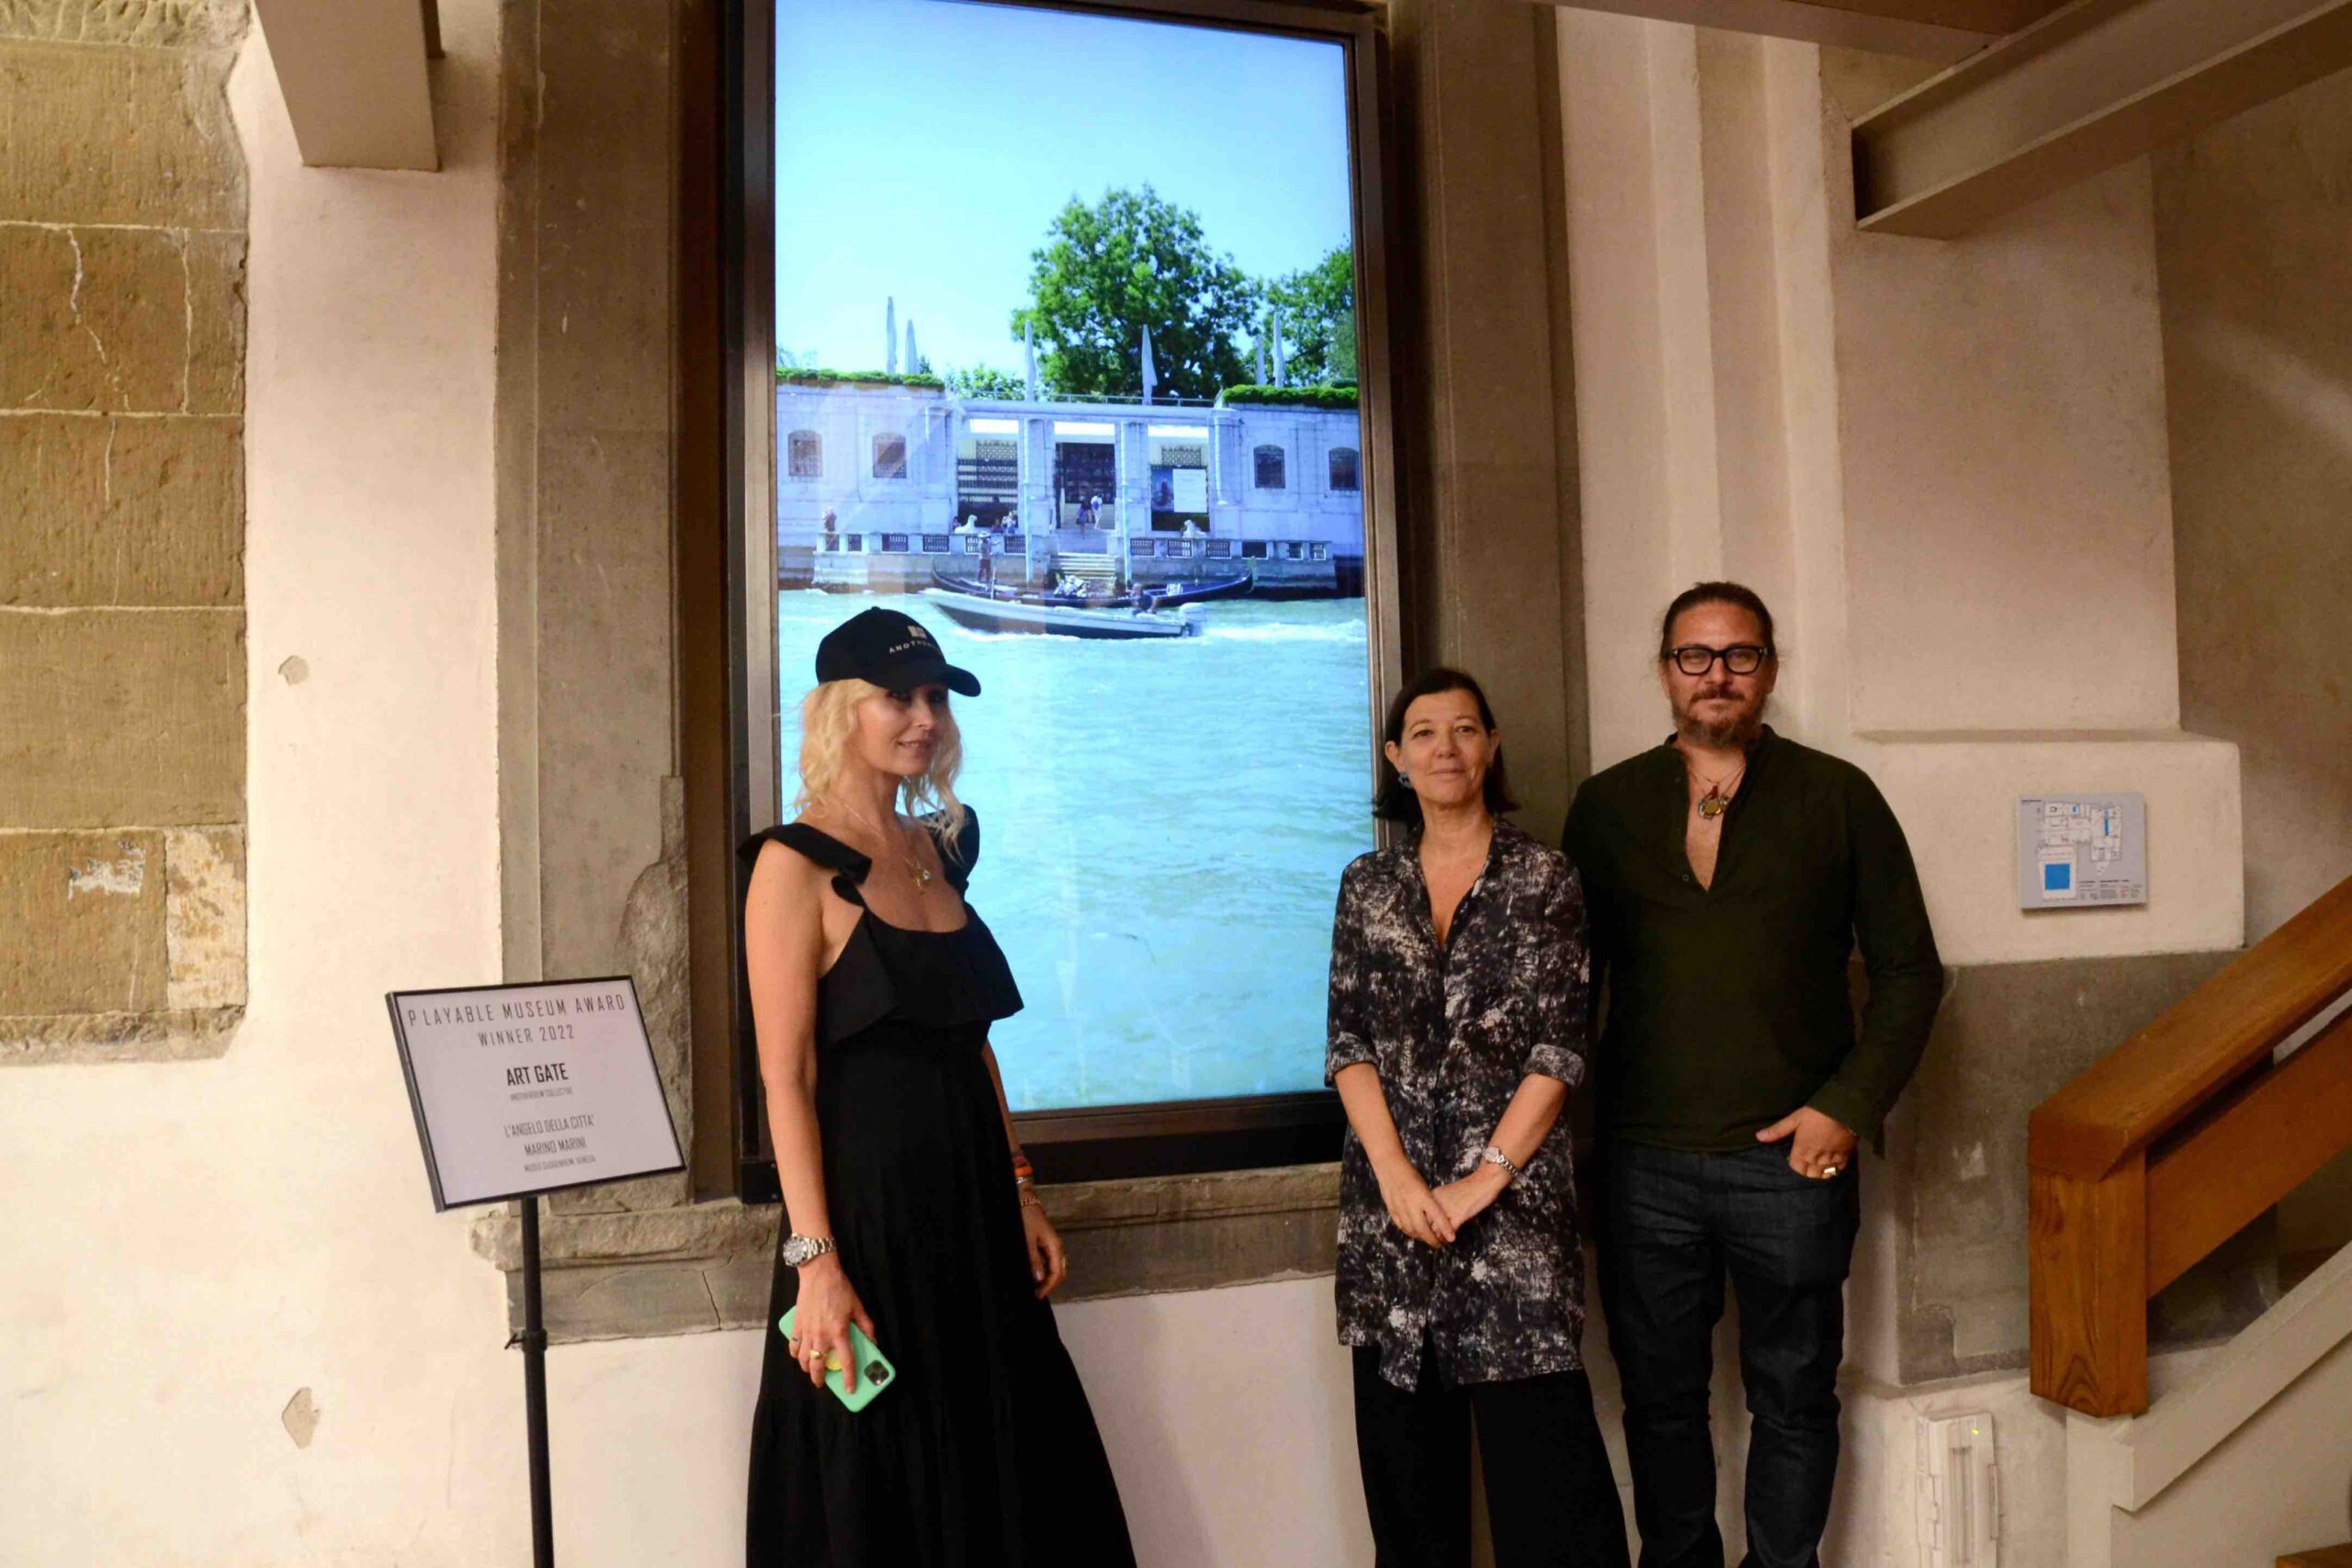 Art Gate | Anotherview. Una finestra virtuale tra Firenze e Venezia